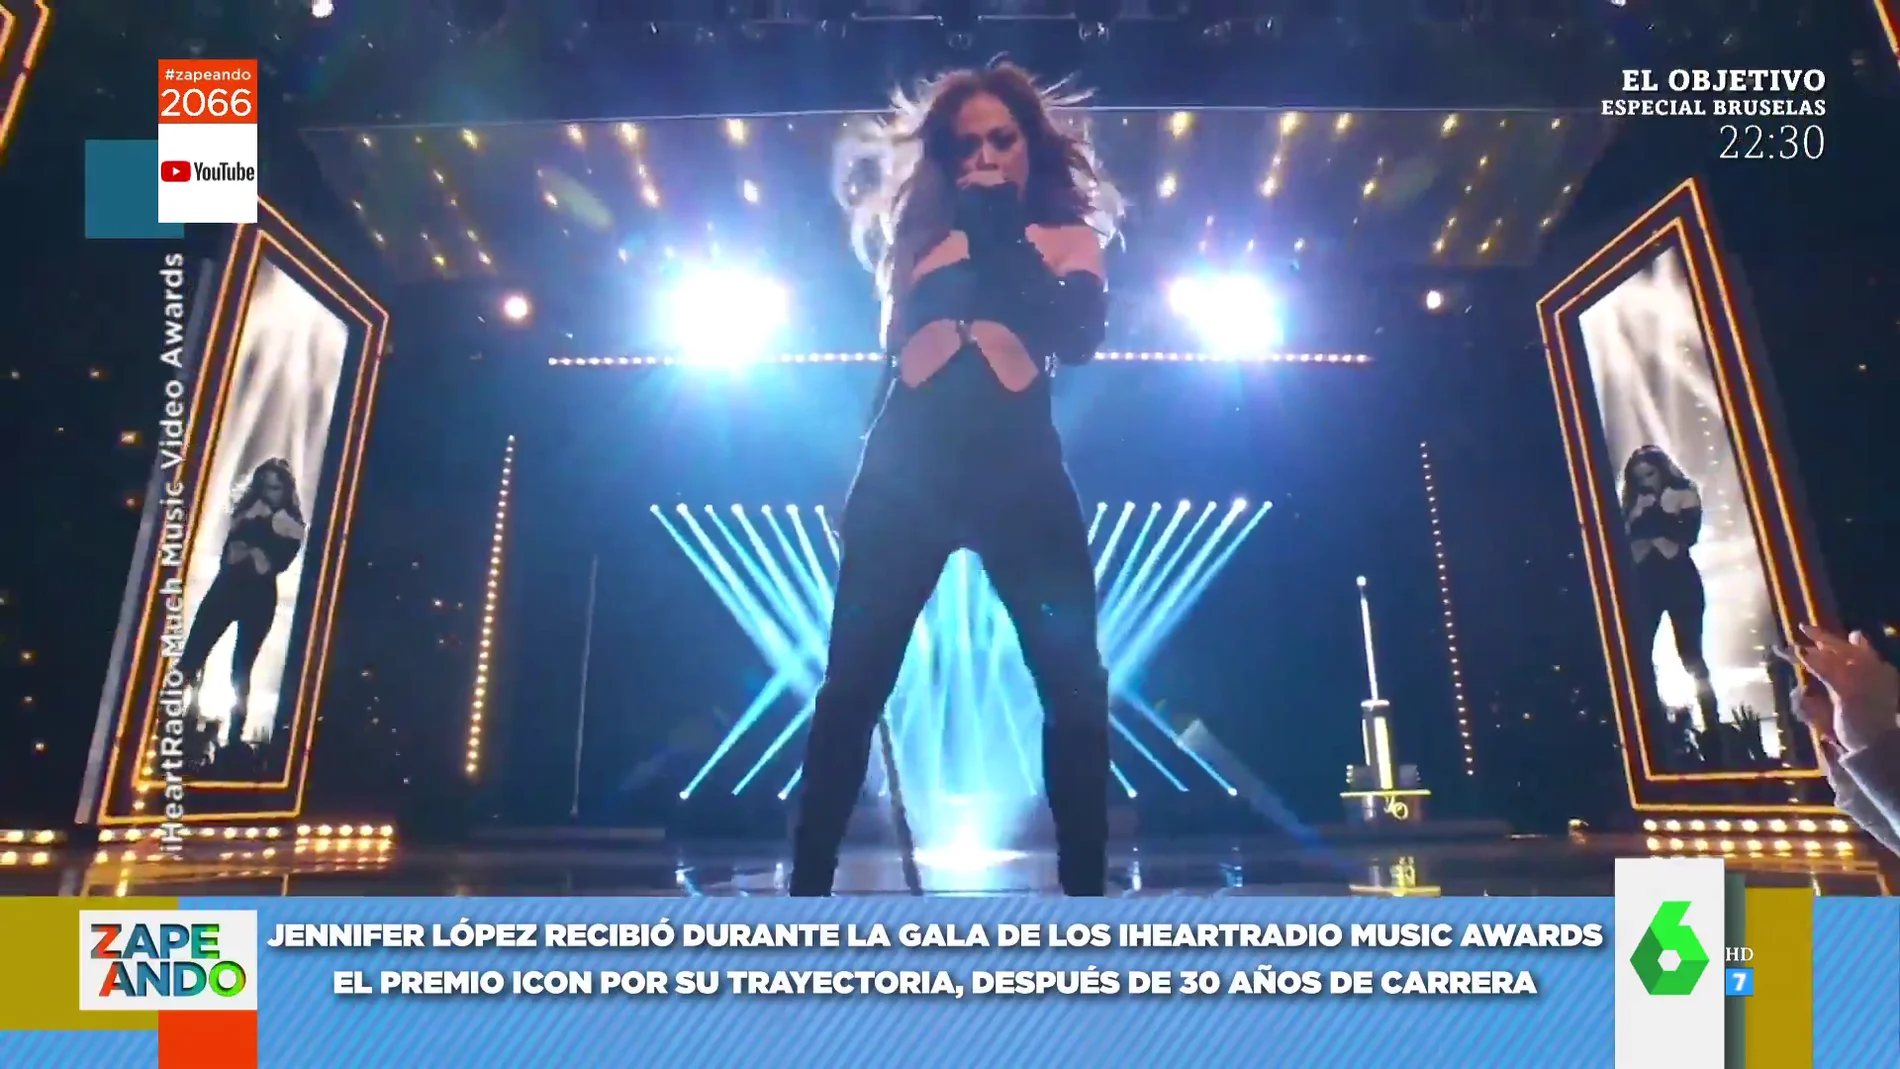 La espectacular actuación de Jennifer López en los Iheartradio Music Awards